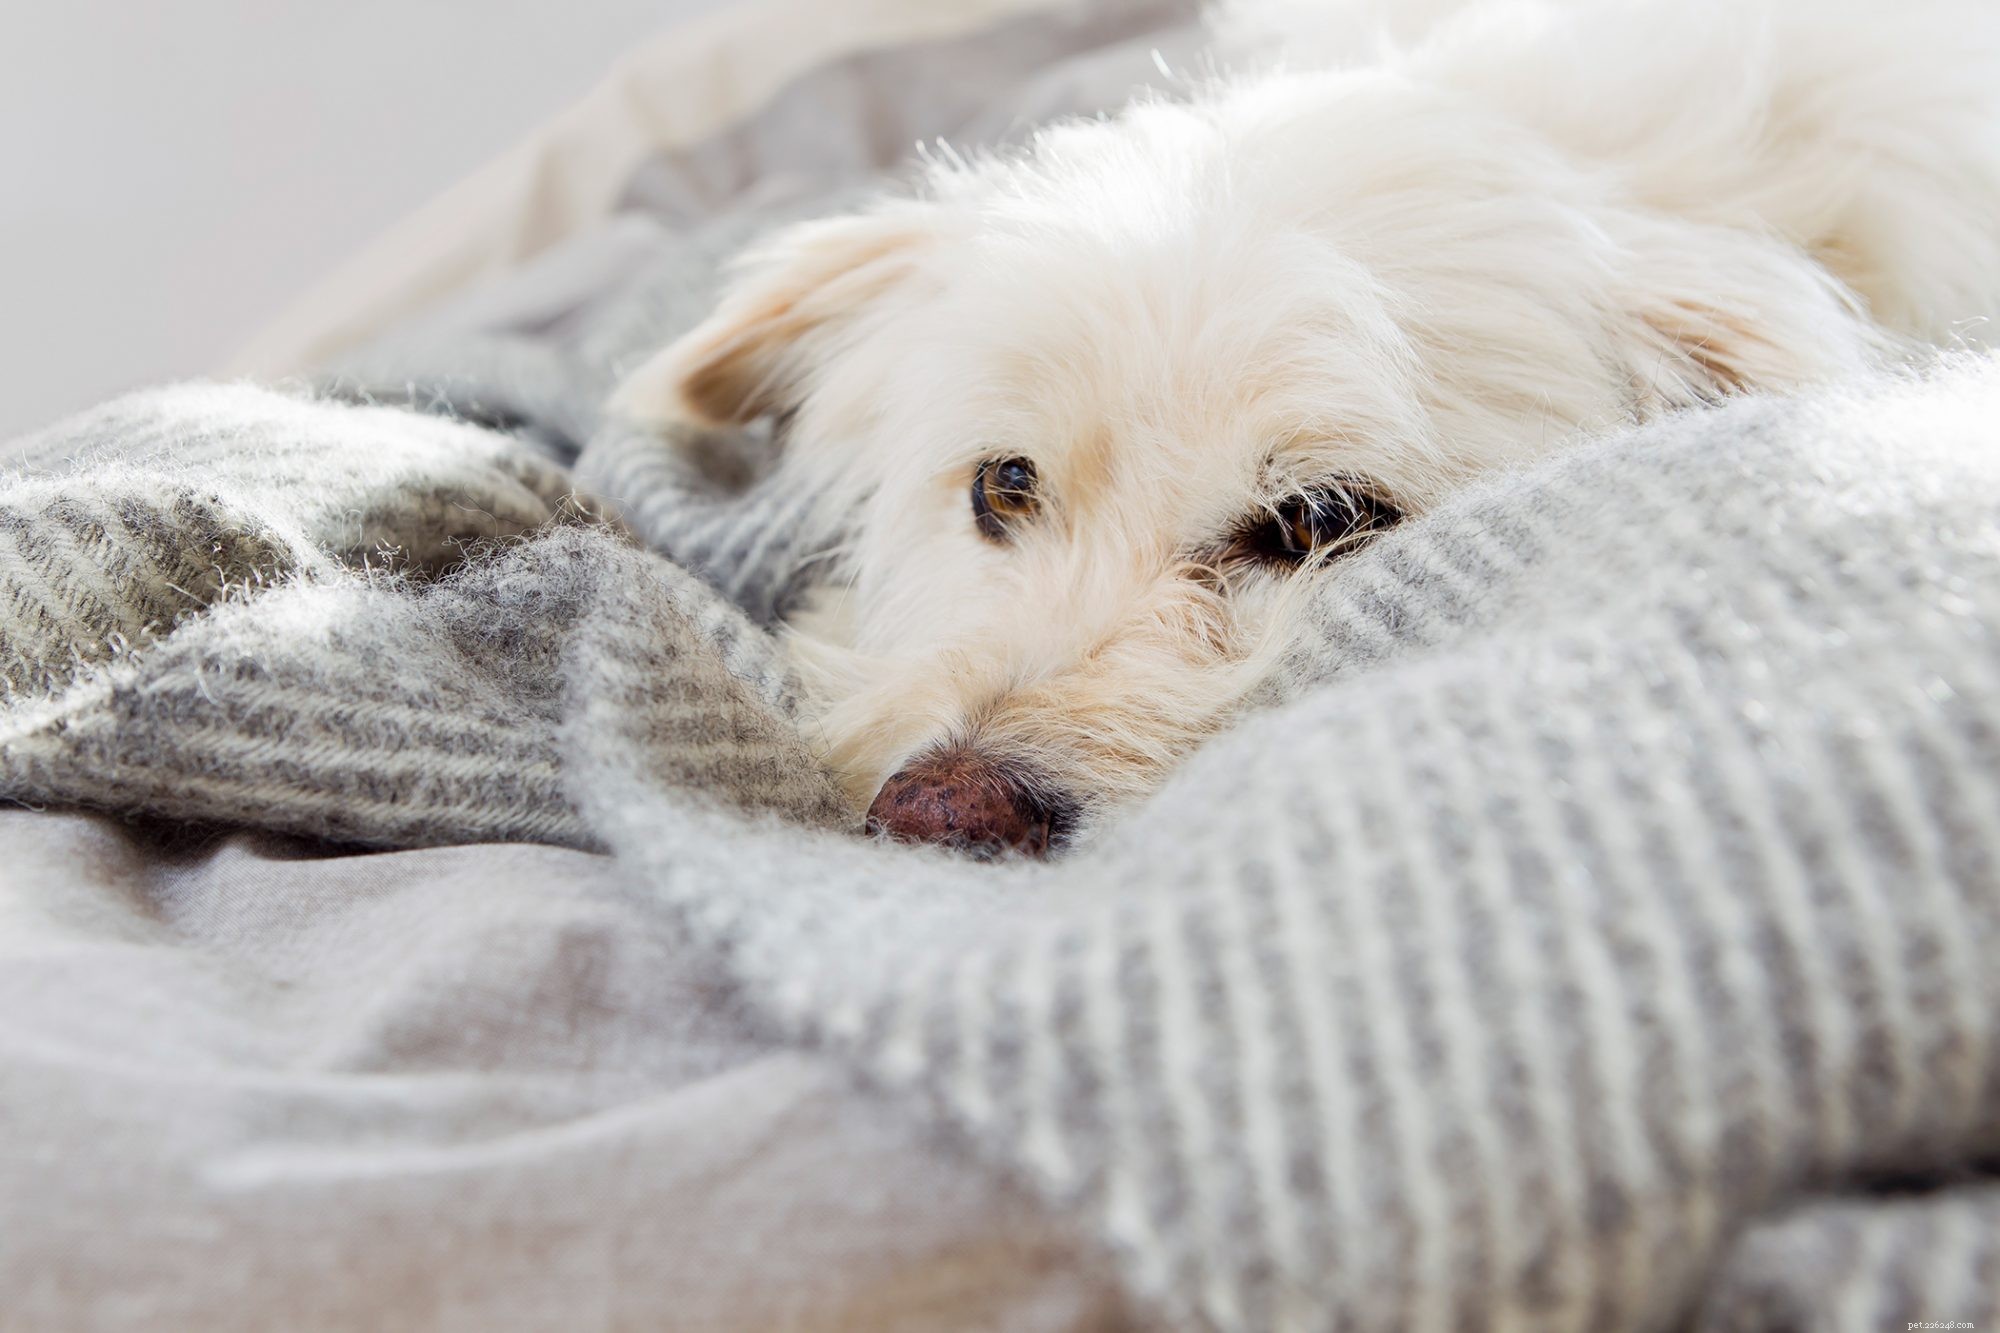 Psí hnízdění:Je zvyk vašich psů před spaním otřesný nebo normální?